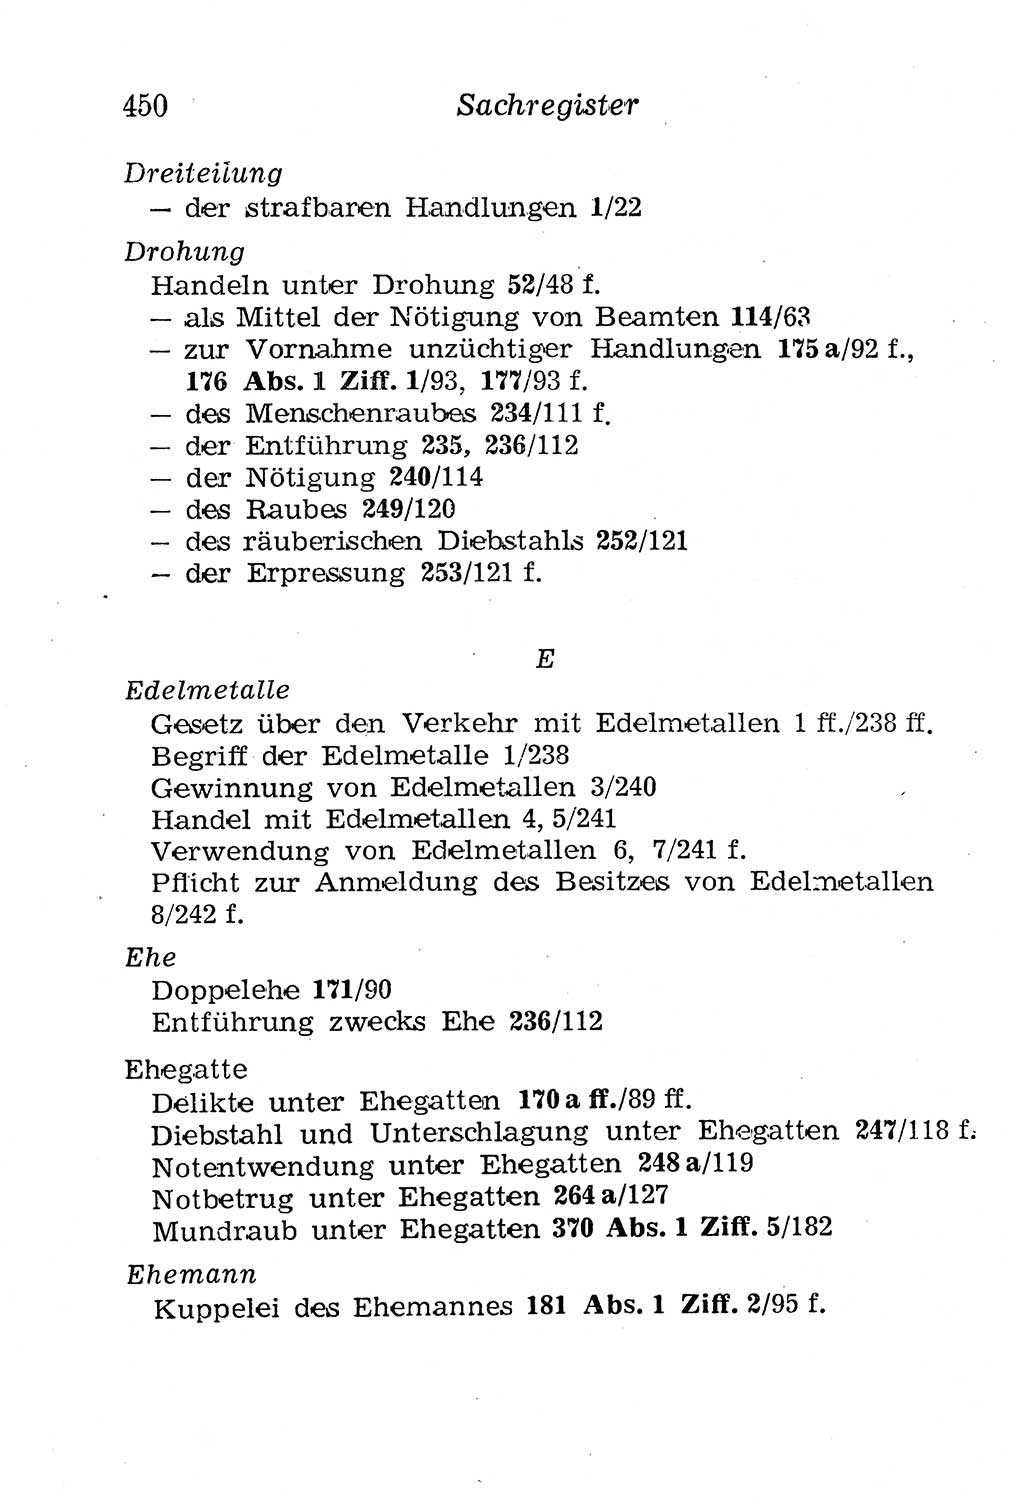 Strafgesetzbuch (StGB) und andere Strafgesetze [Deutsche Demokratische Republik (DDR)] 1958, Seite 450 (StGB Strafges. DDR 1958, S. 450)